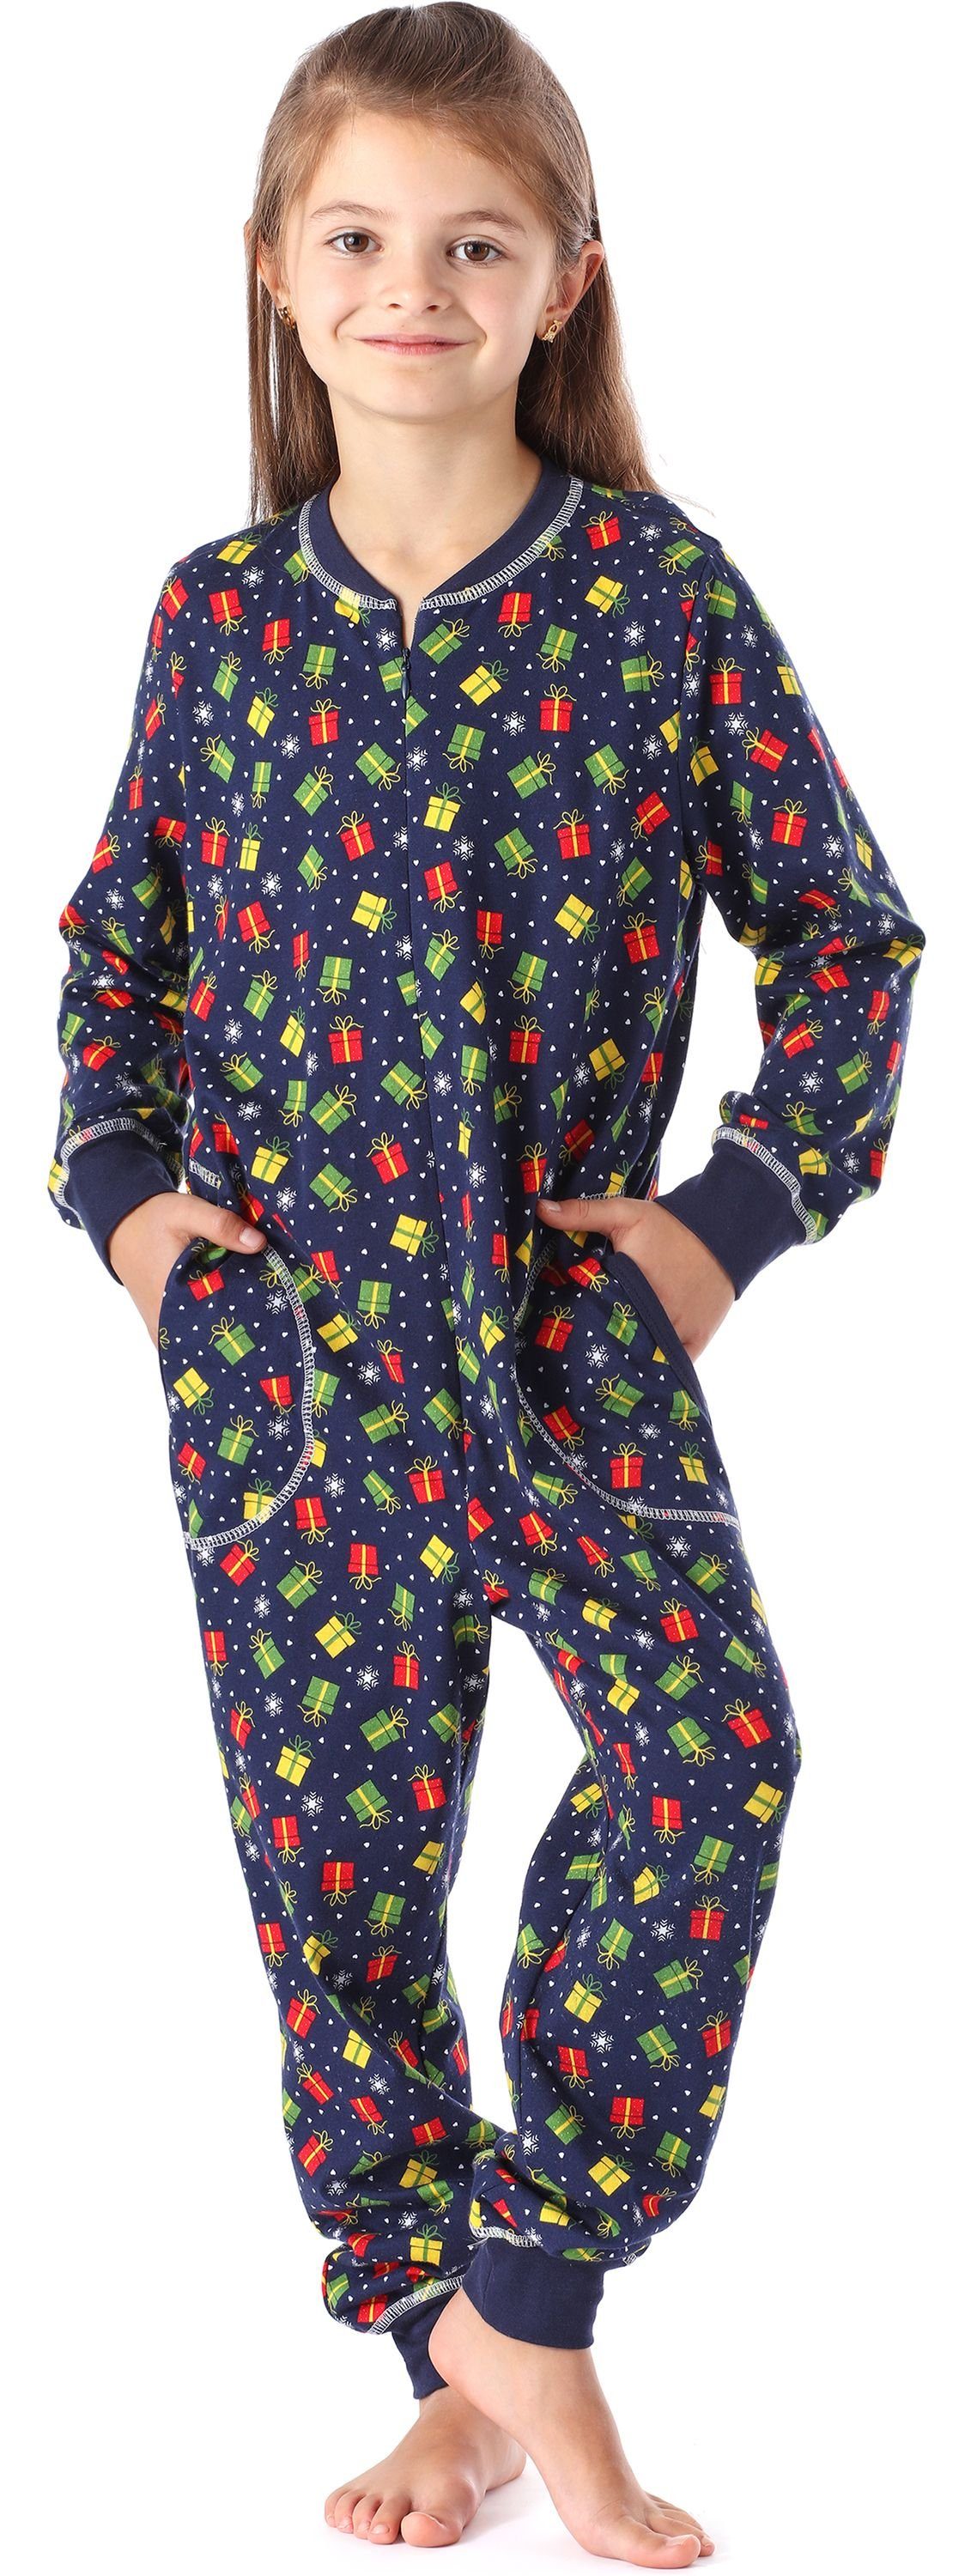 Style Jumpsuit Geschenke Marine Schlafanzug MS10-186 Schlafanzug Mädchen Merry